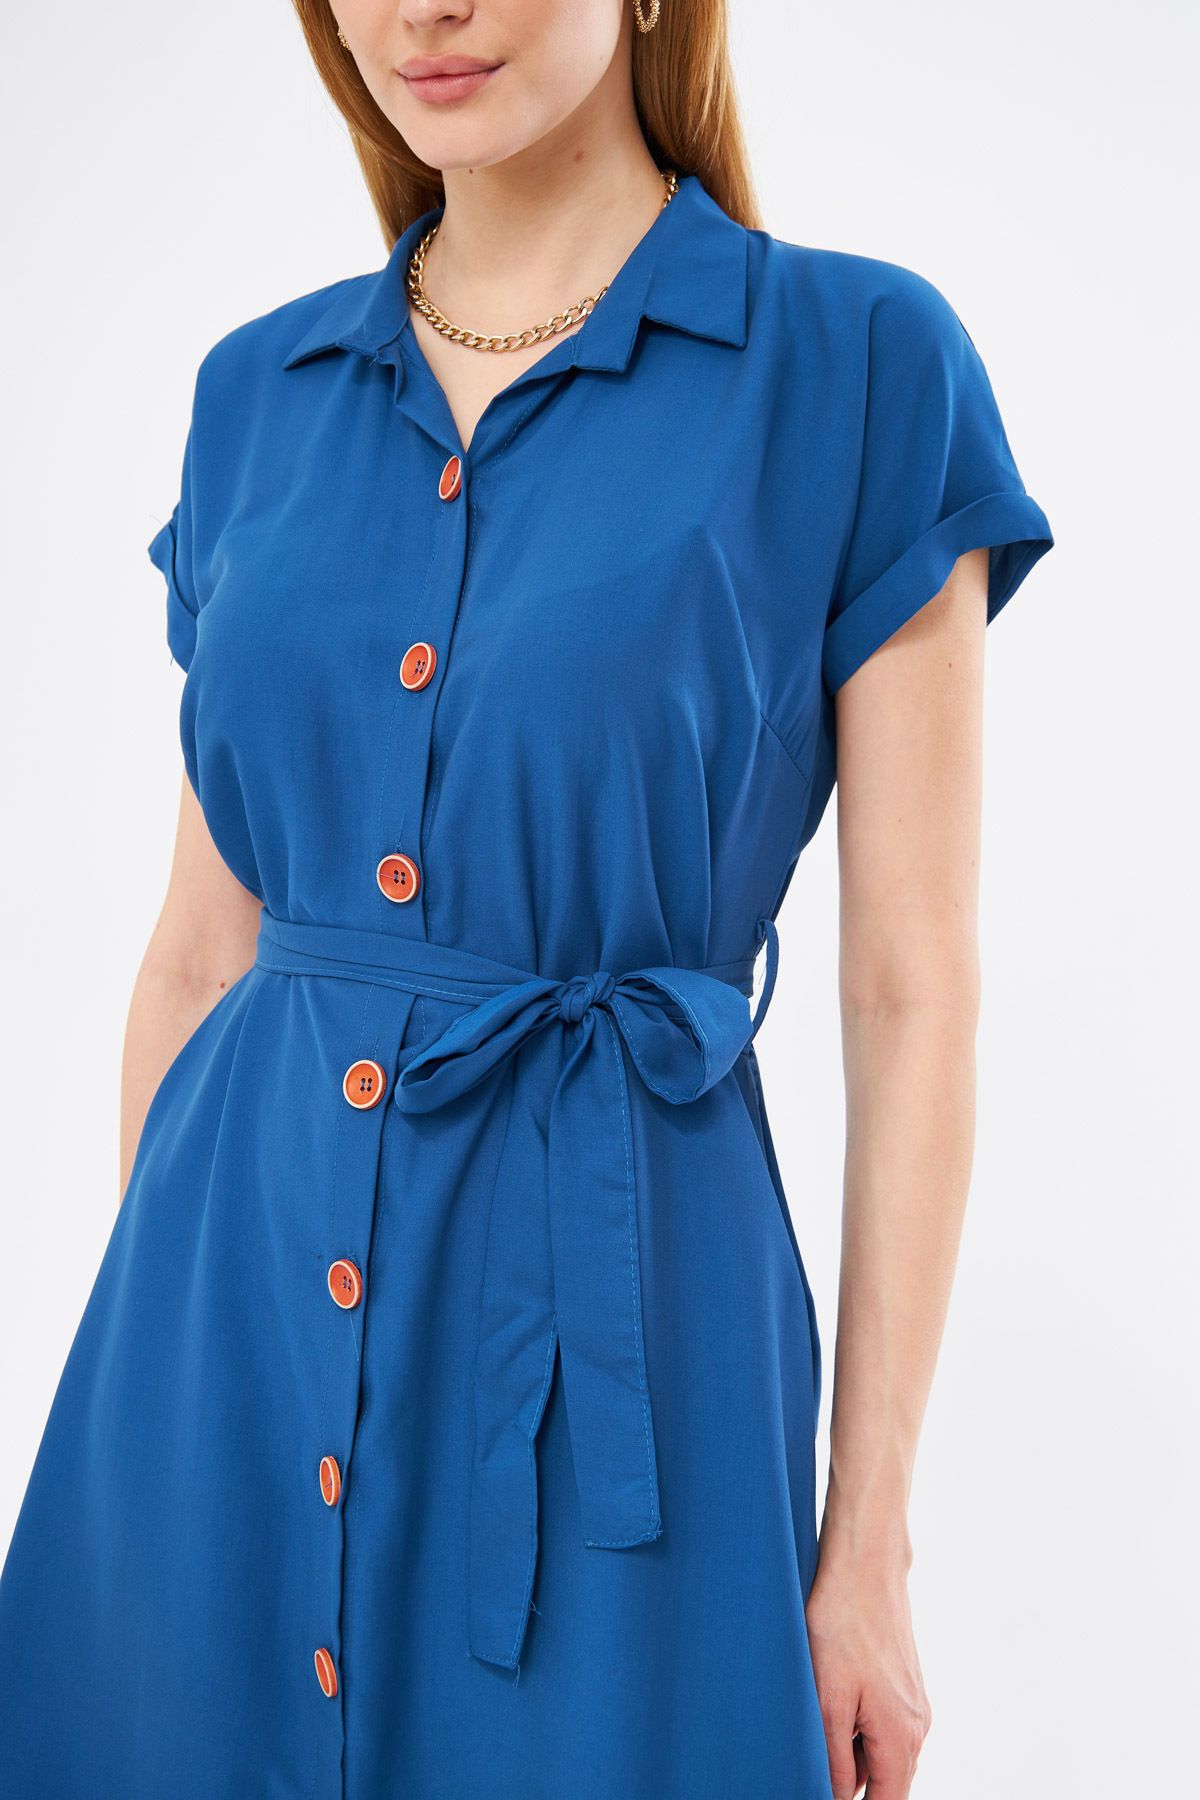 Kadın Koyu Mavi Beli Kemerli Kısa Kol Gömlek Elbise ARM-19Y001068